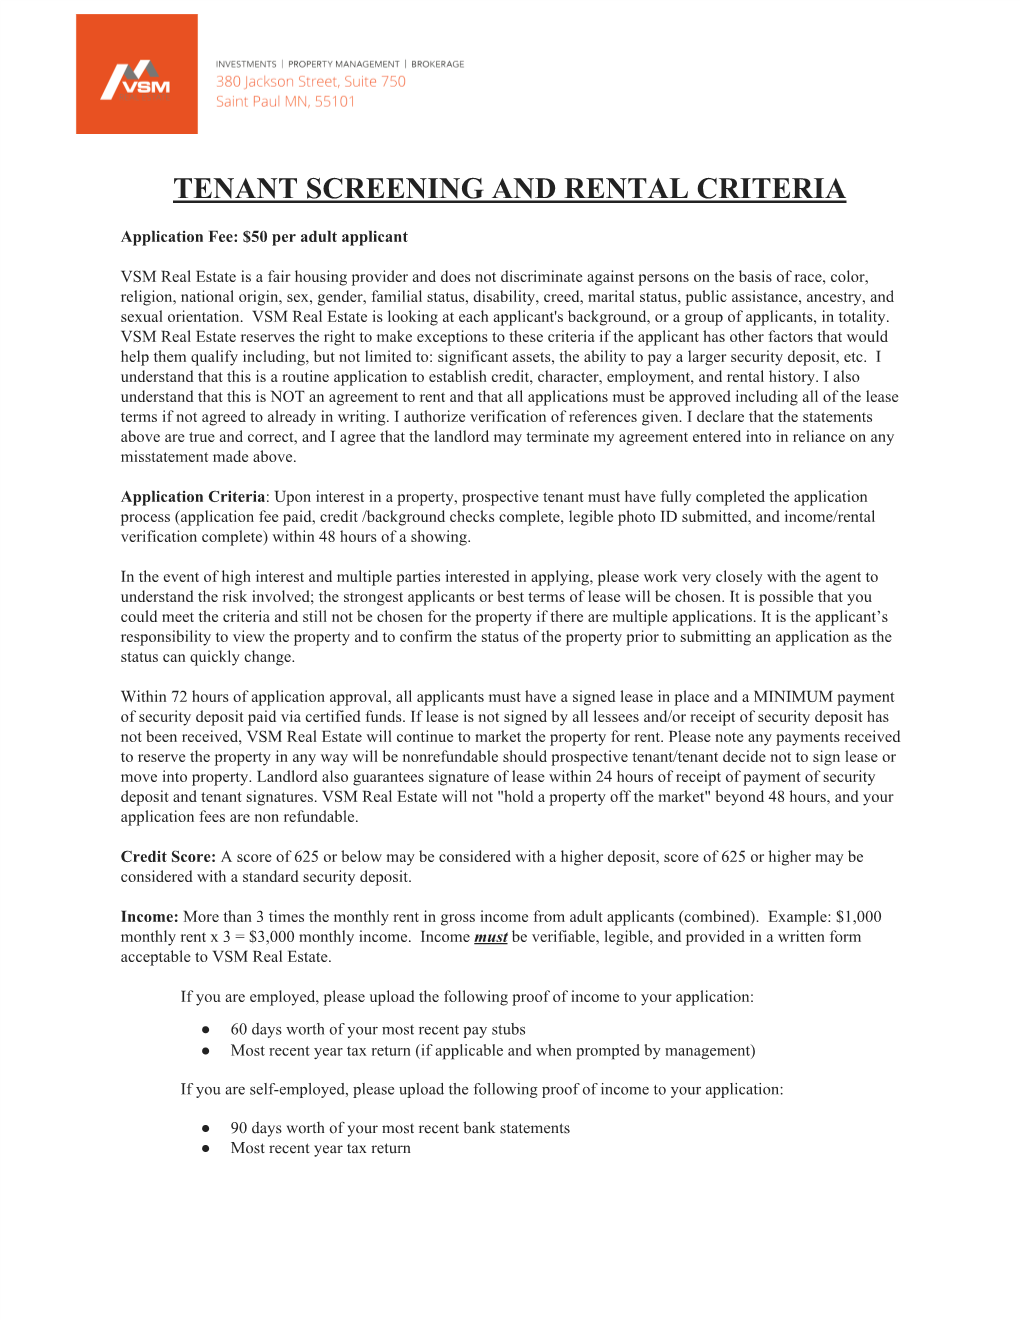 Tenant Screening and Rental Criteria